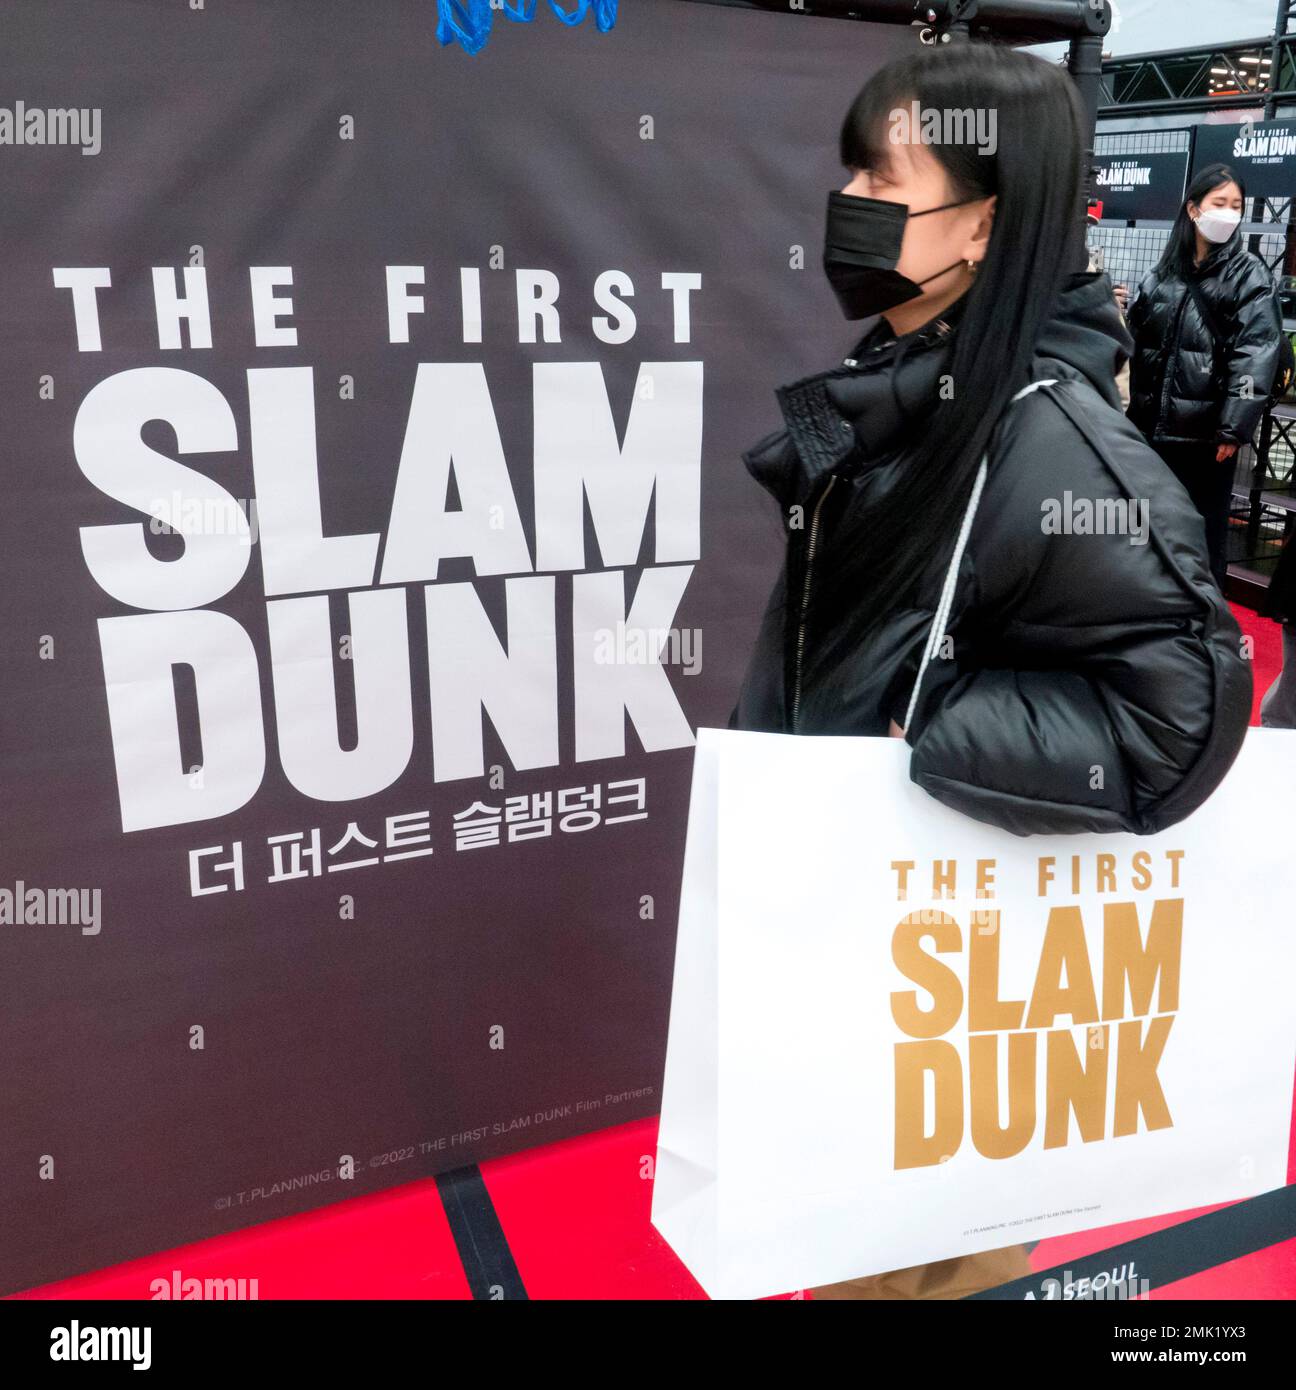 The First Slam Dunk Film Grosses Over 6.7 Billion Yen, Secures